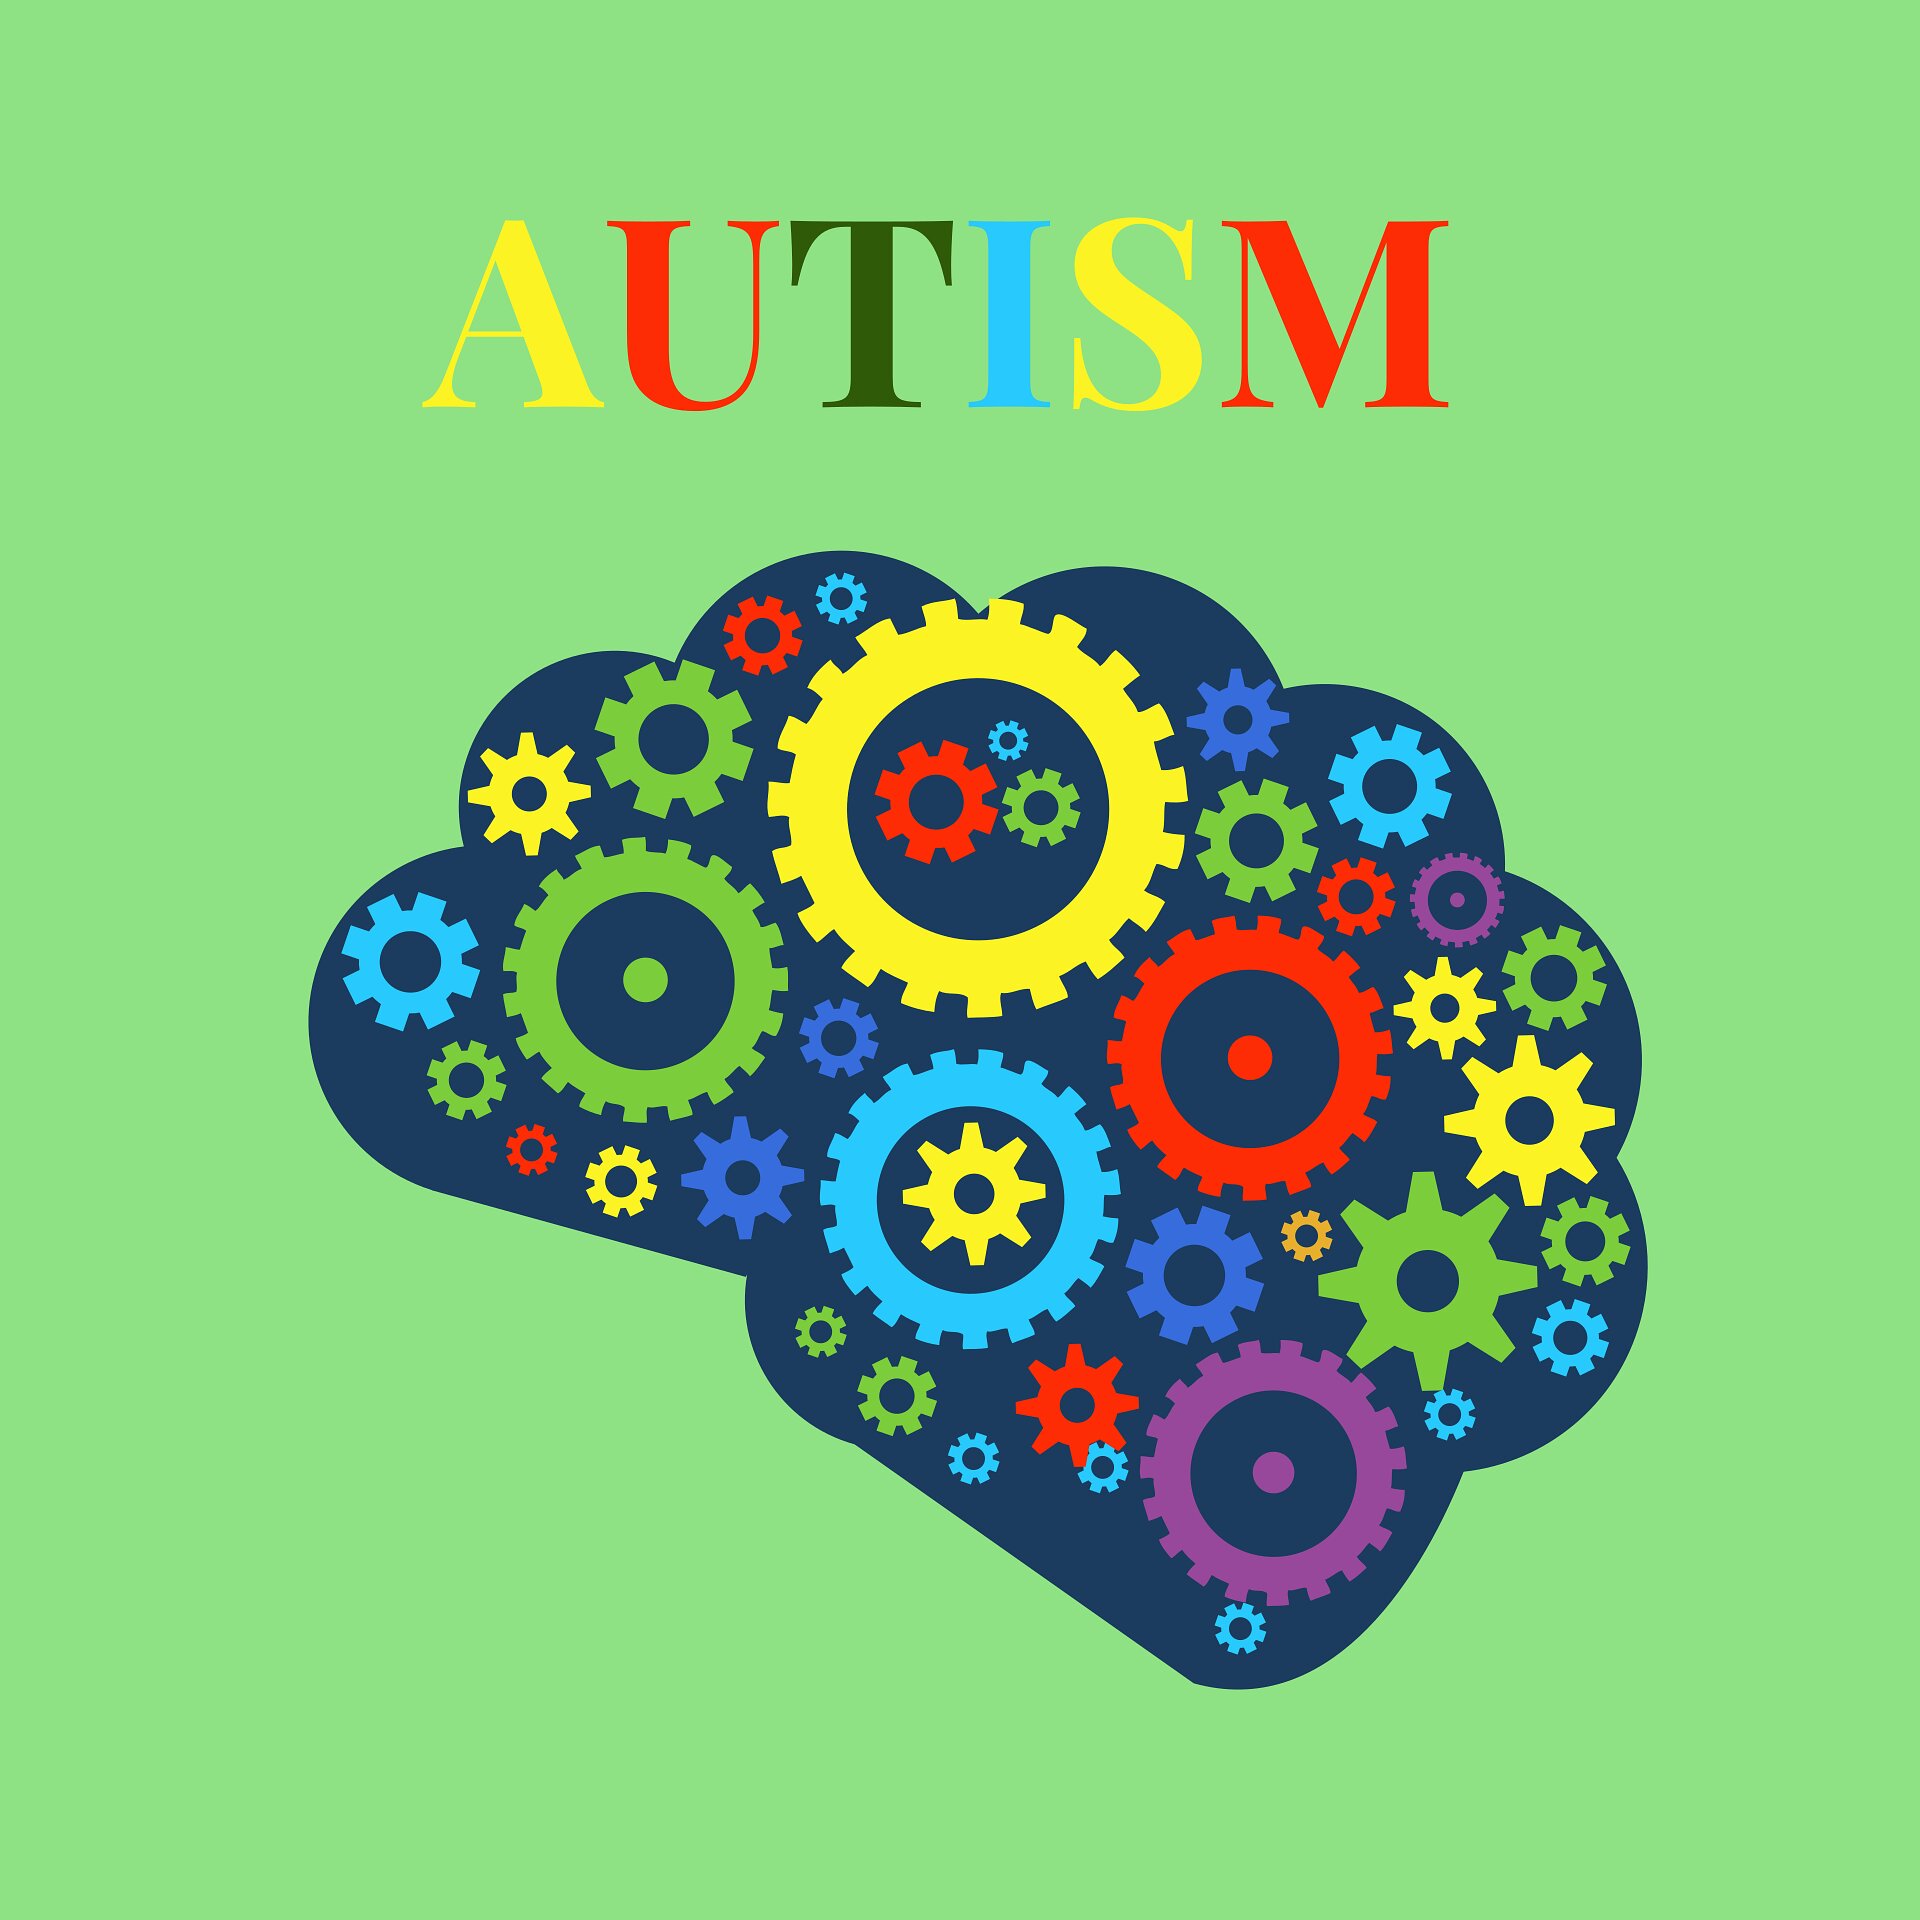 ئۆتیزم لە منداڵاندا